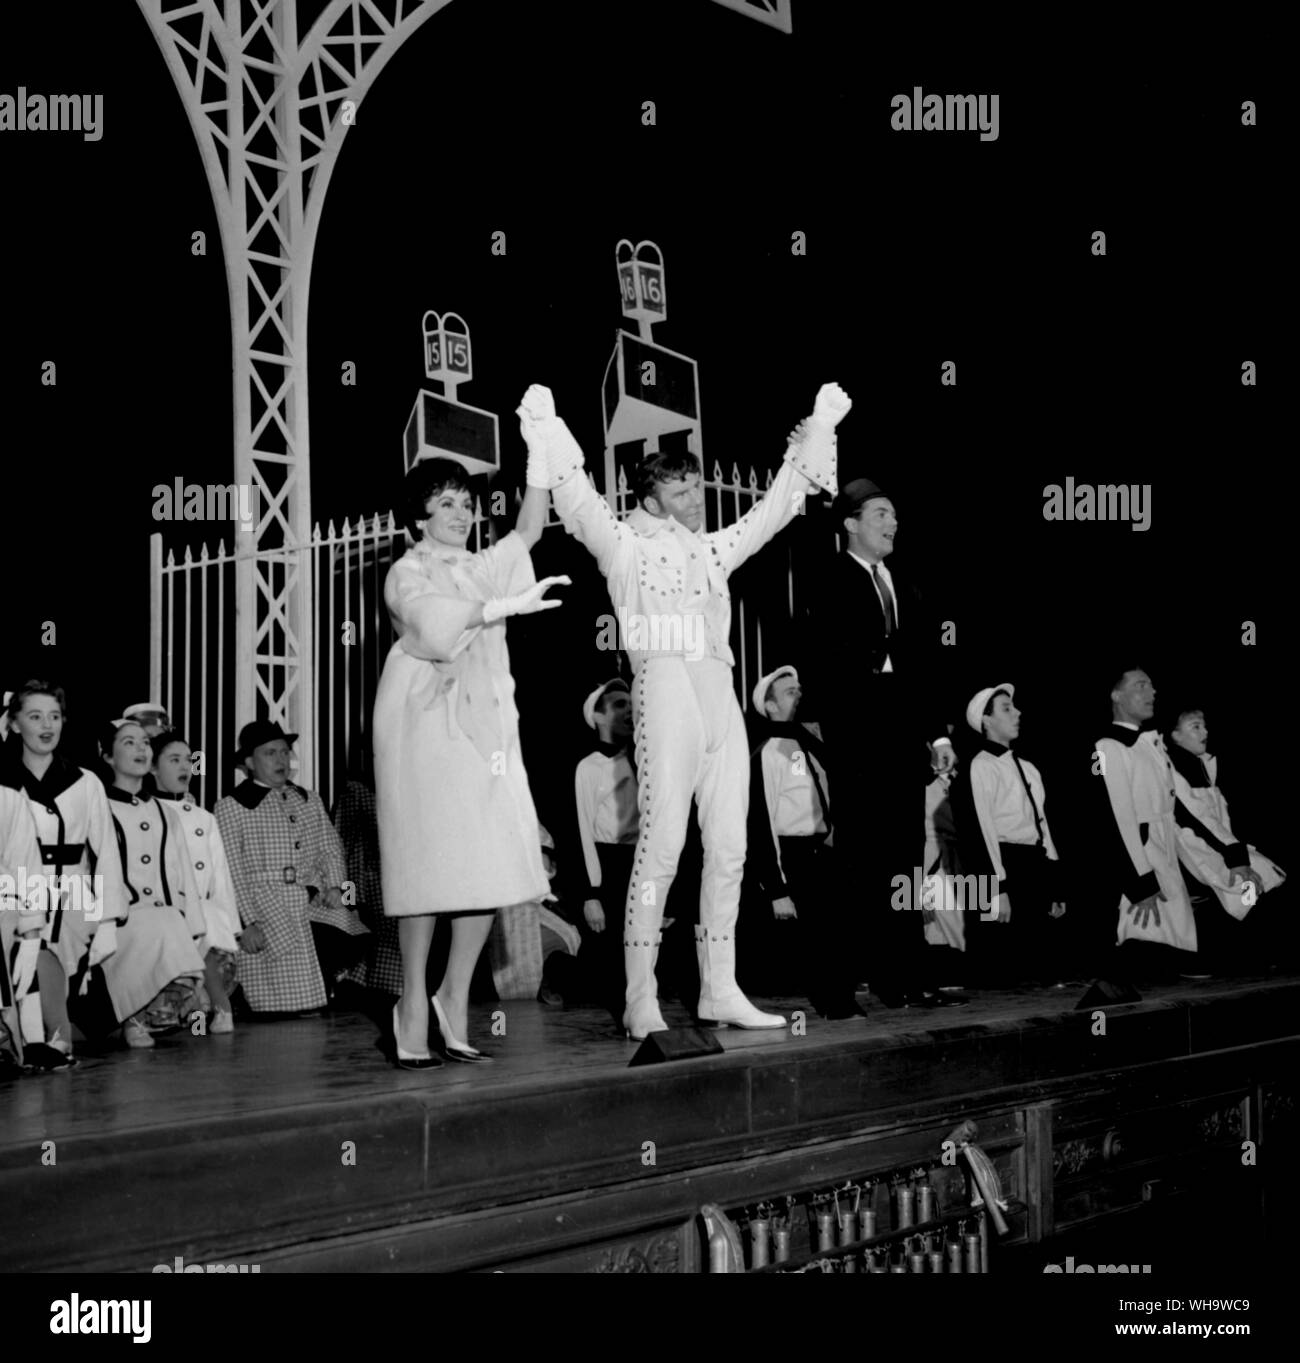 15 Juin 1961 : Marty Wilde (au centre en blanc) étoiles dans la comédie musicale, Bye Bye Birdie au London's Haymarket Theatre. À sa gauche est Chita Rivera et à sa droite, Peter Marshall. Wilde joue un rock 'n' roll star dans le spectacle. Banque D'Images